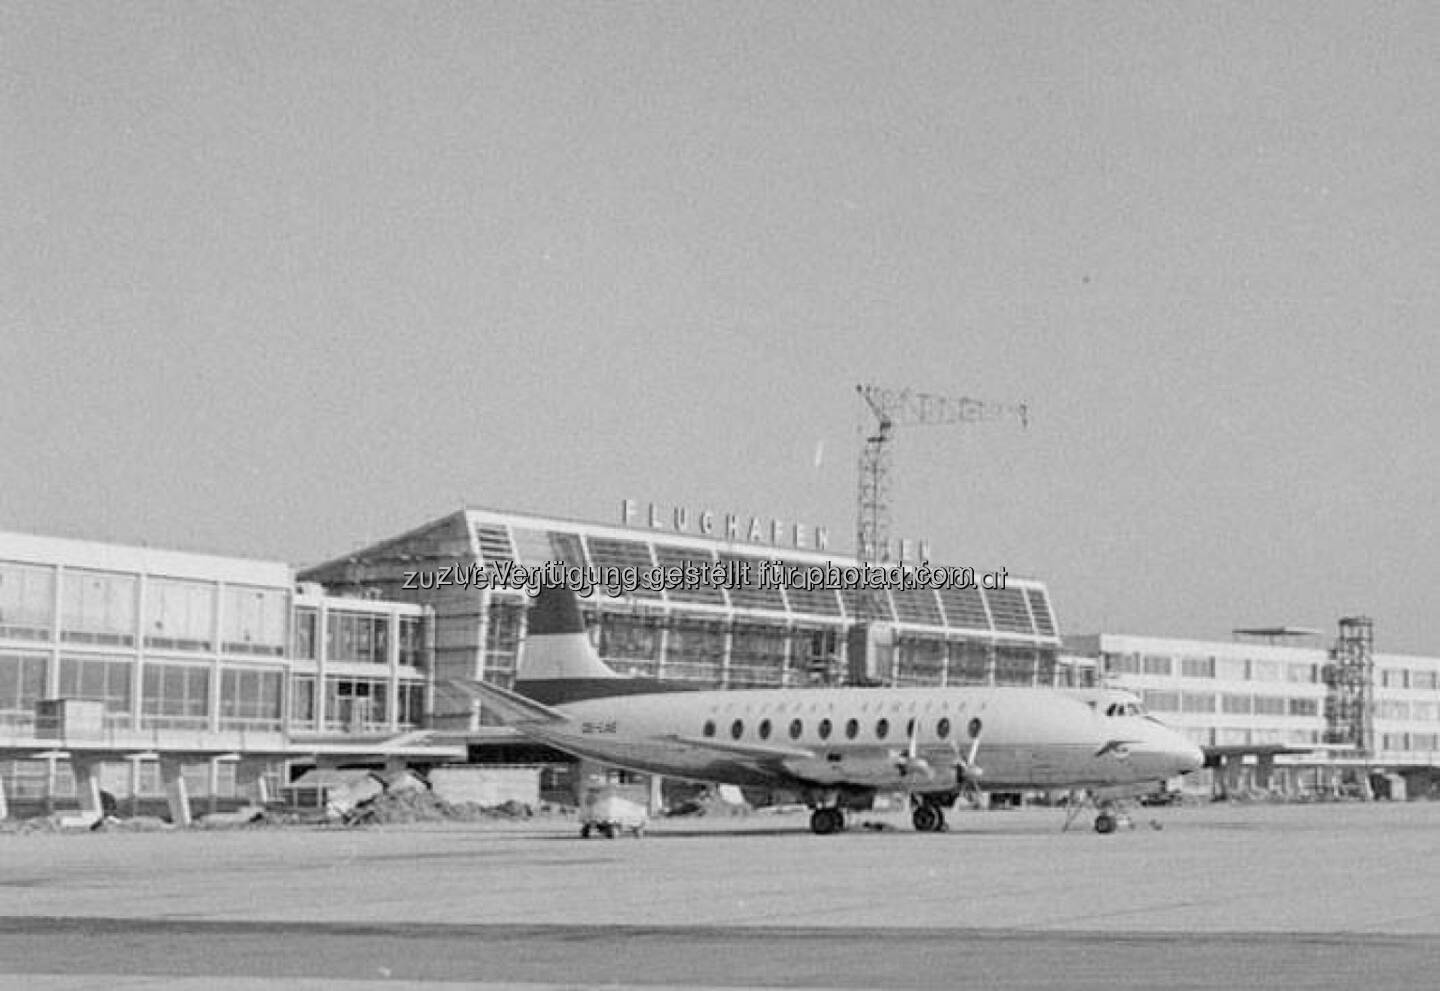 17 Airlines haben 1957 den Flughafen Wien angeflogen. PanAm, Aeroflot, CSA, LOT und die Deutsche Lufthansa kamen regelmäßig. Und für ein paar Tage sogar Luftschiffe!  Source: http://facebook.com/flughafenwien